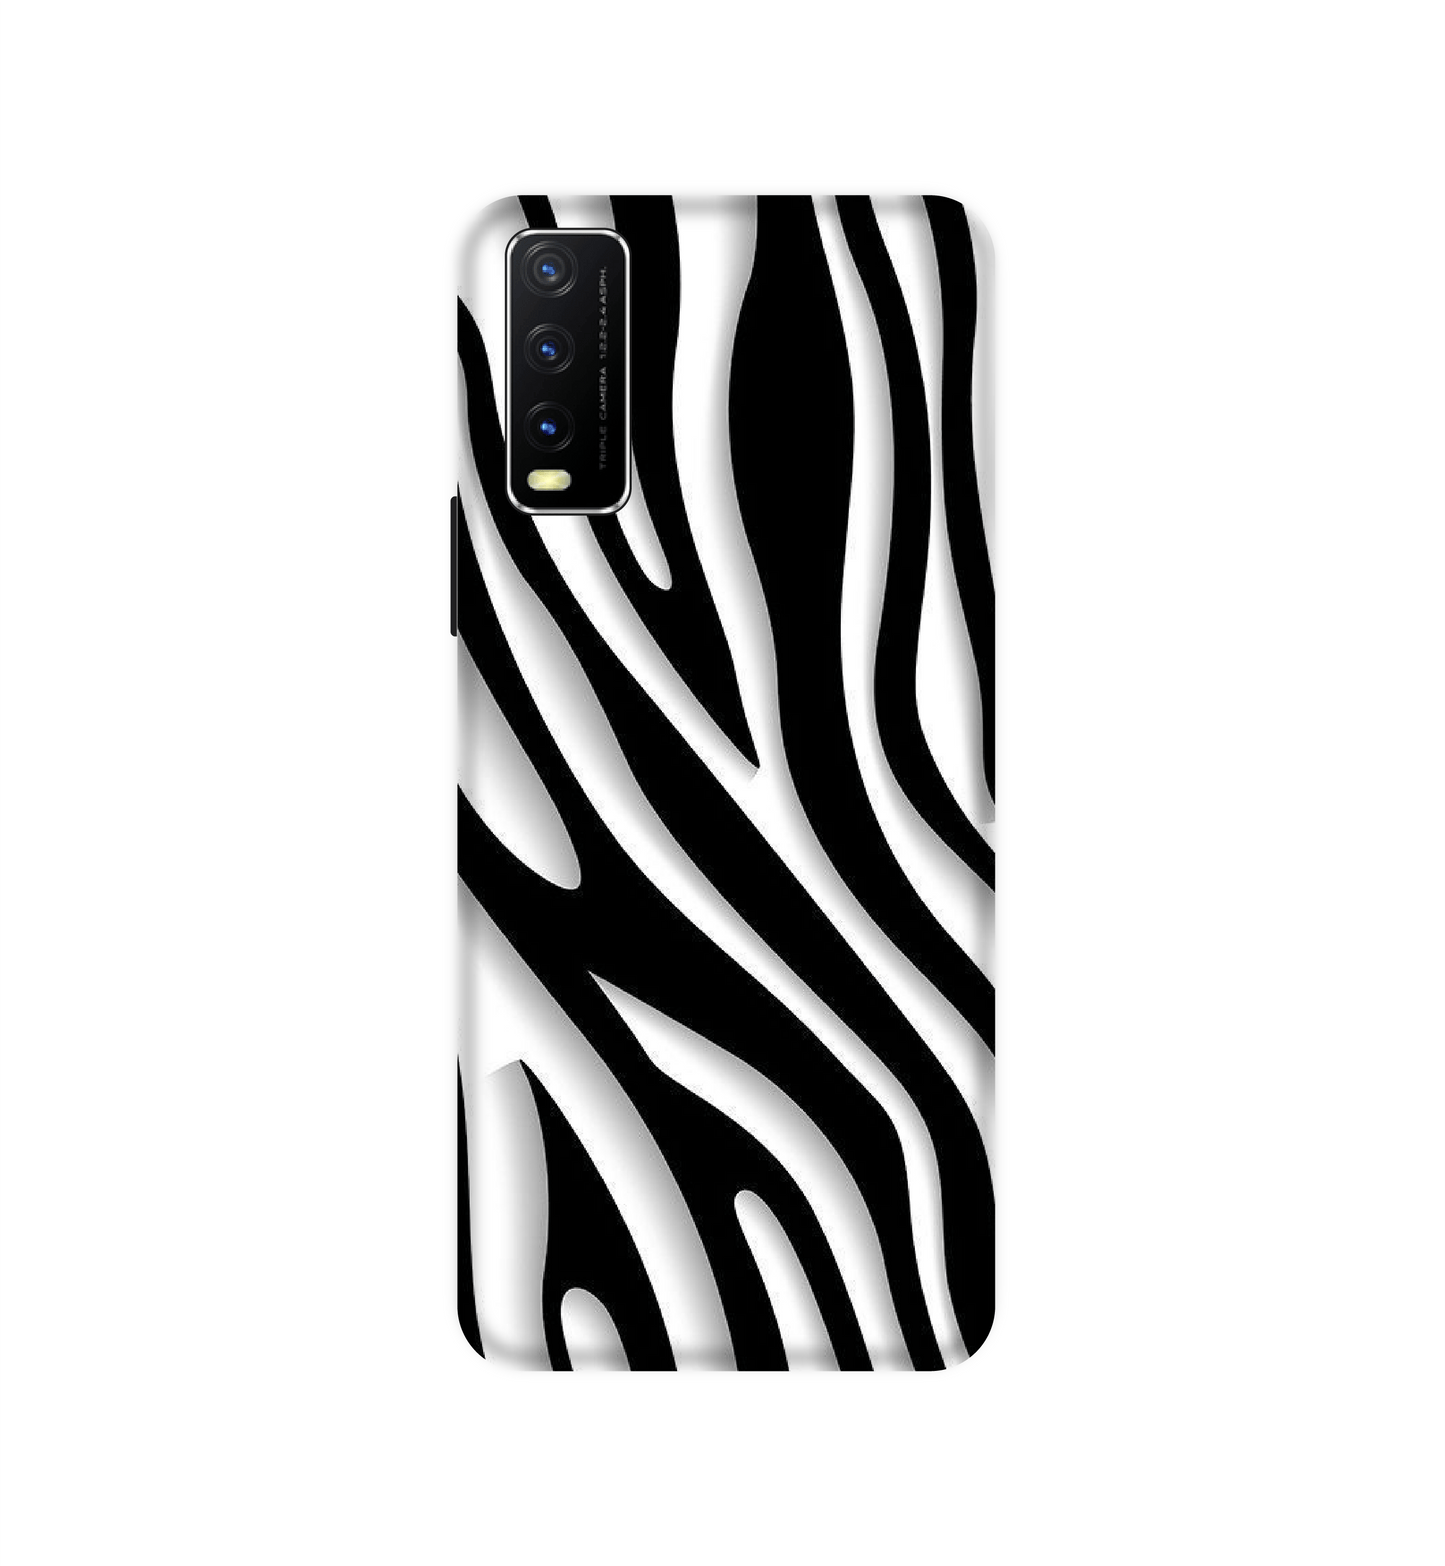 Zebra Print - Hard Cases For Vivo Models